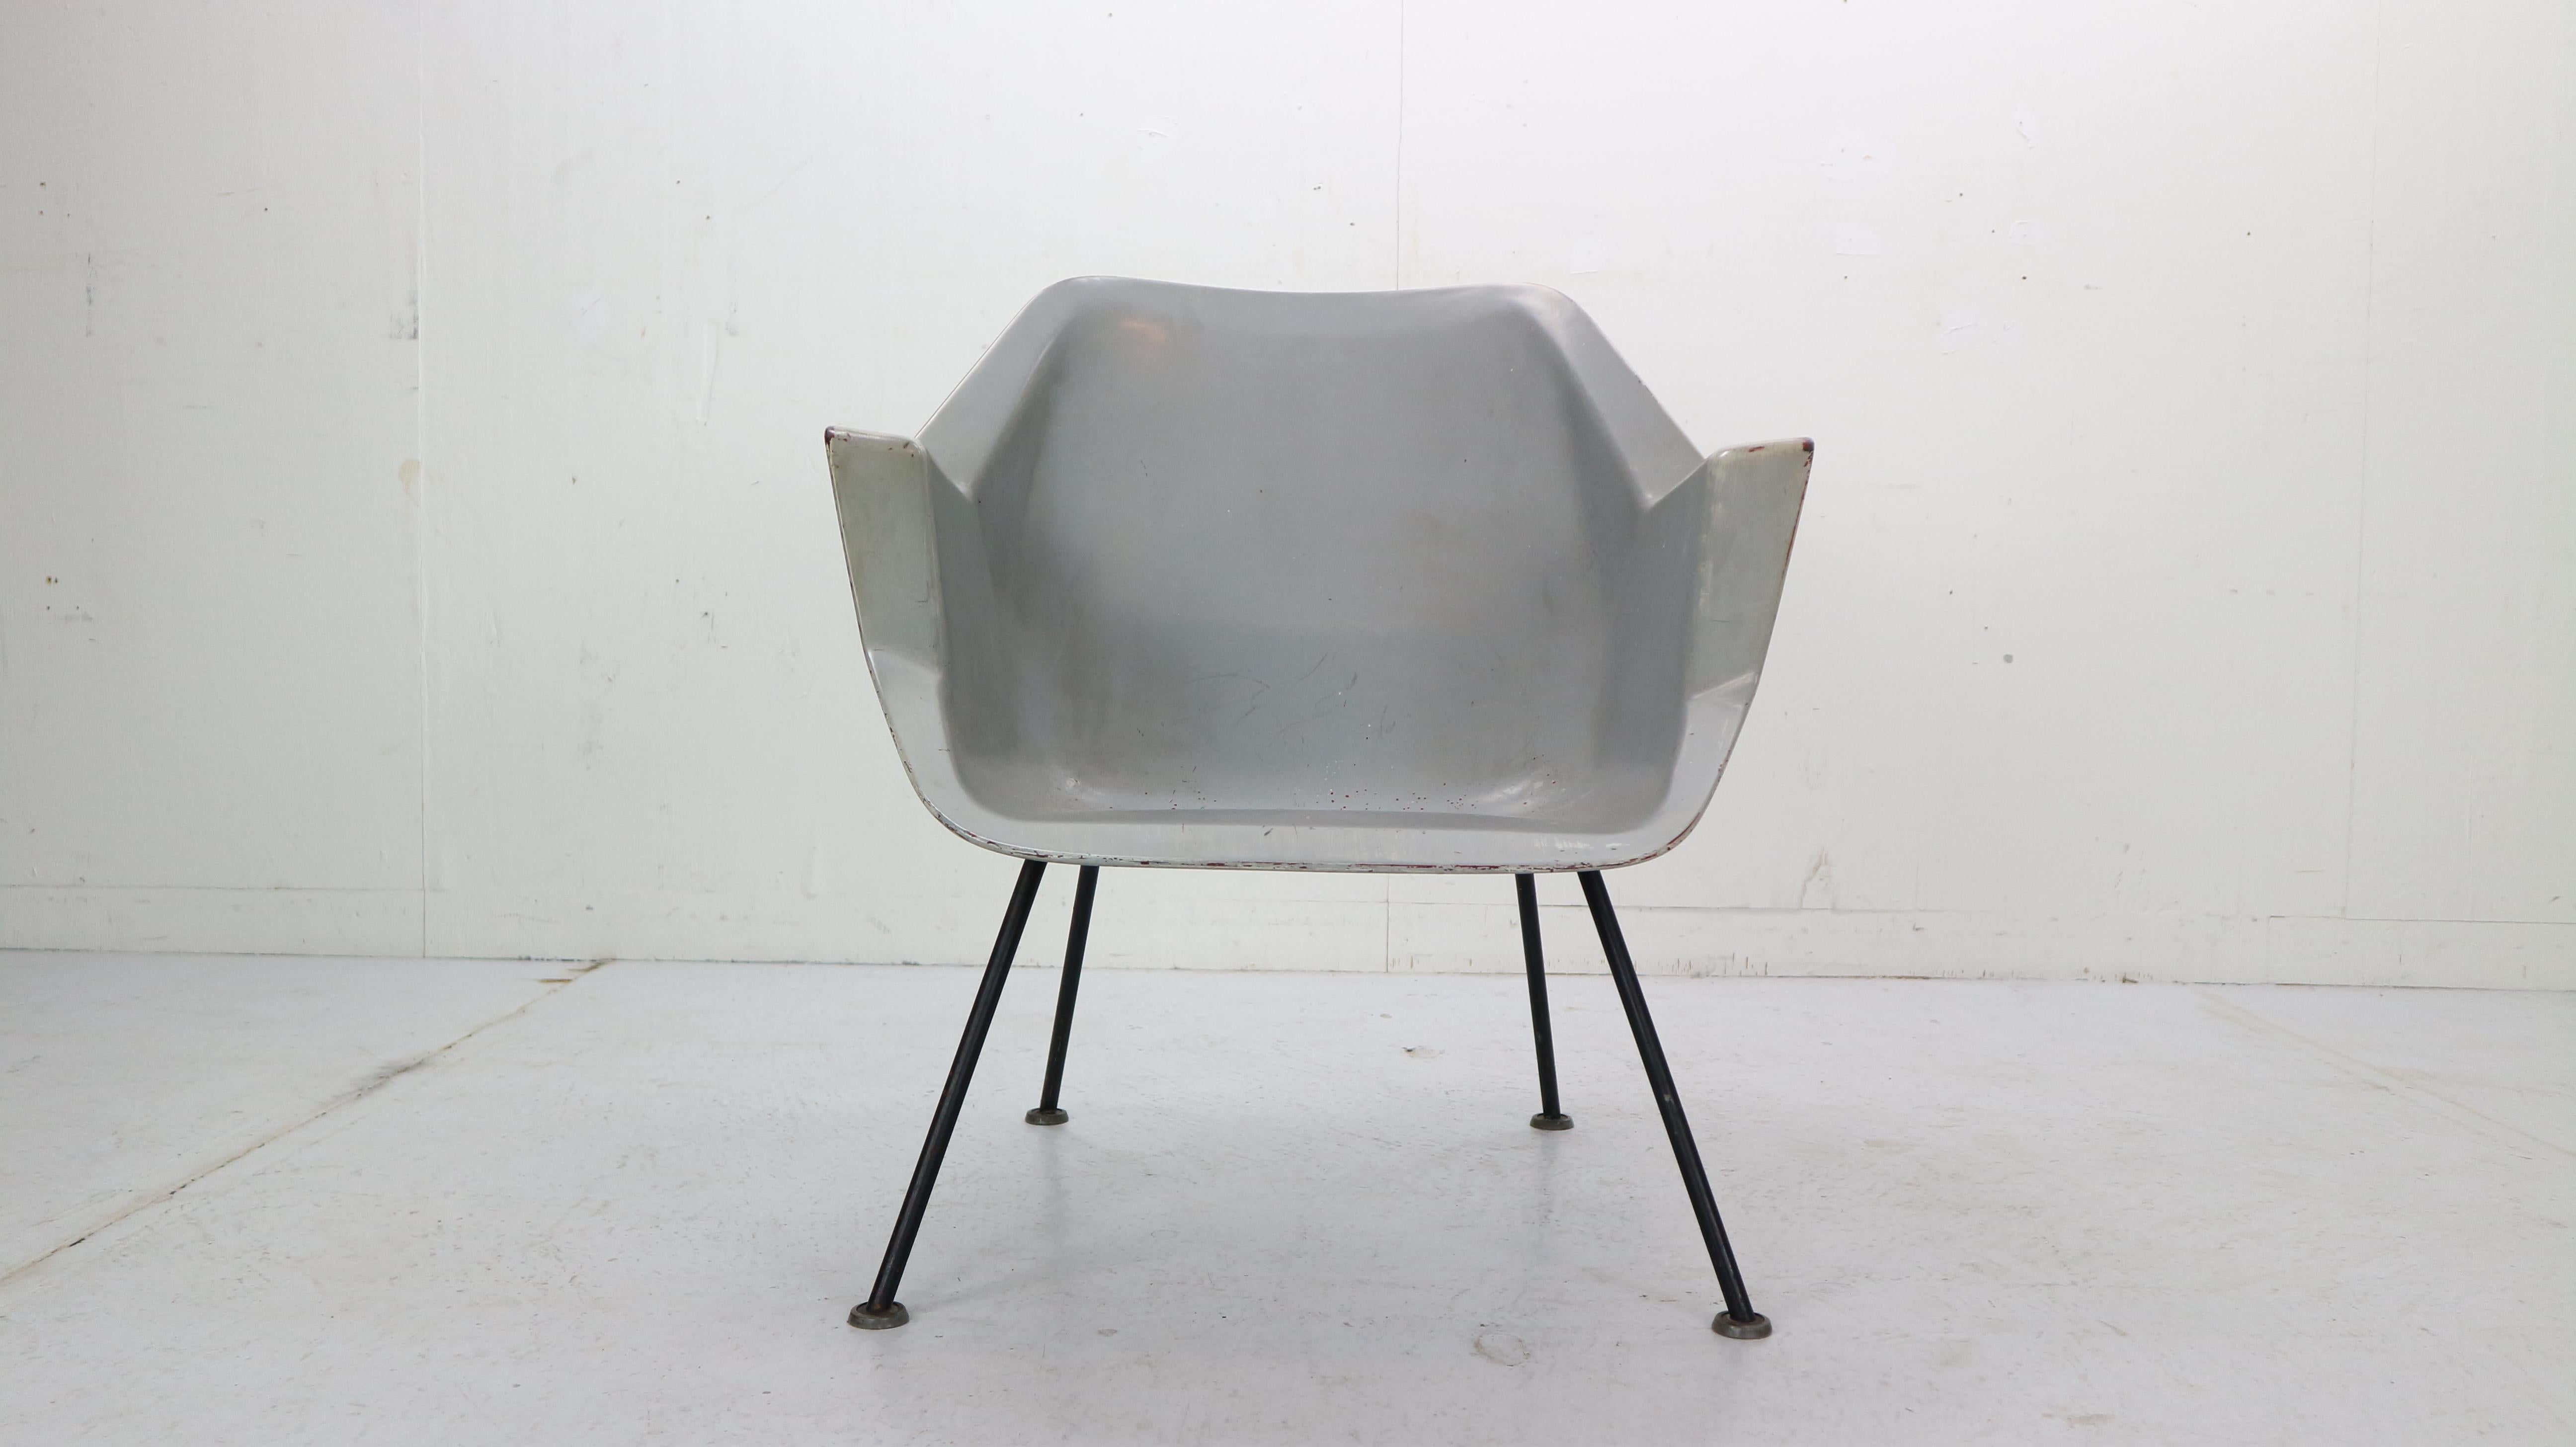 Minimalistisches niederländisches Stolz-Design - Nr. 416 Modell Lounge/ Sessel, entworfen von Wim Rietveld (Sohn von Gerrit Thomas Rietveld) und Andre Cordemeyer für Gispen, Culemborg, 1957.
Dieser erste holländische Polyester-Sessel wurde aus